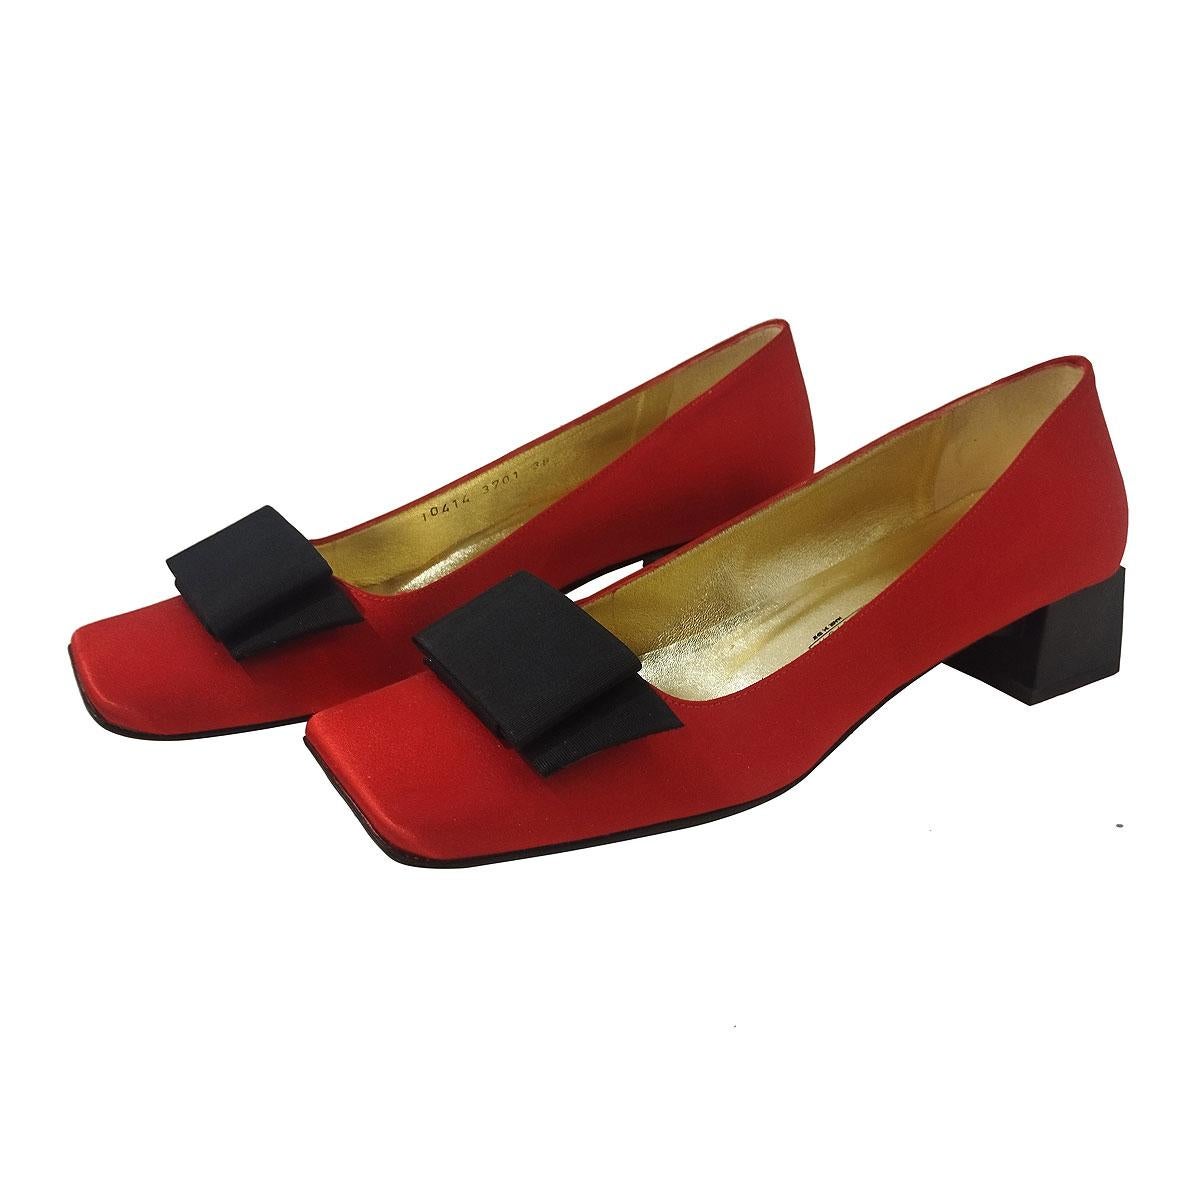 Schöne Vintage-Schuhe von Giuseppe Zanotti Design
Vintage By
Satin
Rote Farbe
Schwarze Schleife
Absatzhöhe cm 3,5 (1,37 Zoll)
Hergestellt in Italien
Weltweiter schneller Versand im Preis inbegriffen